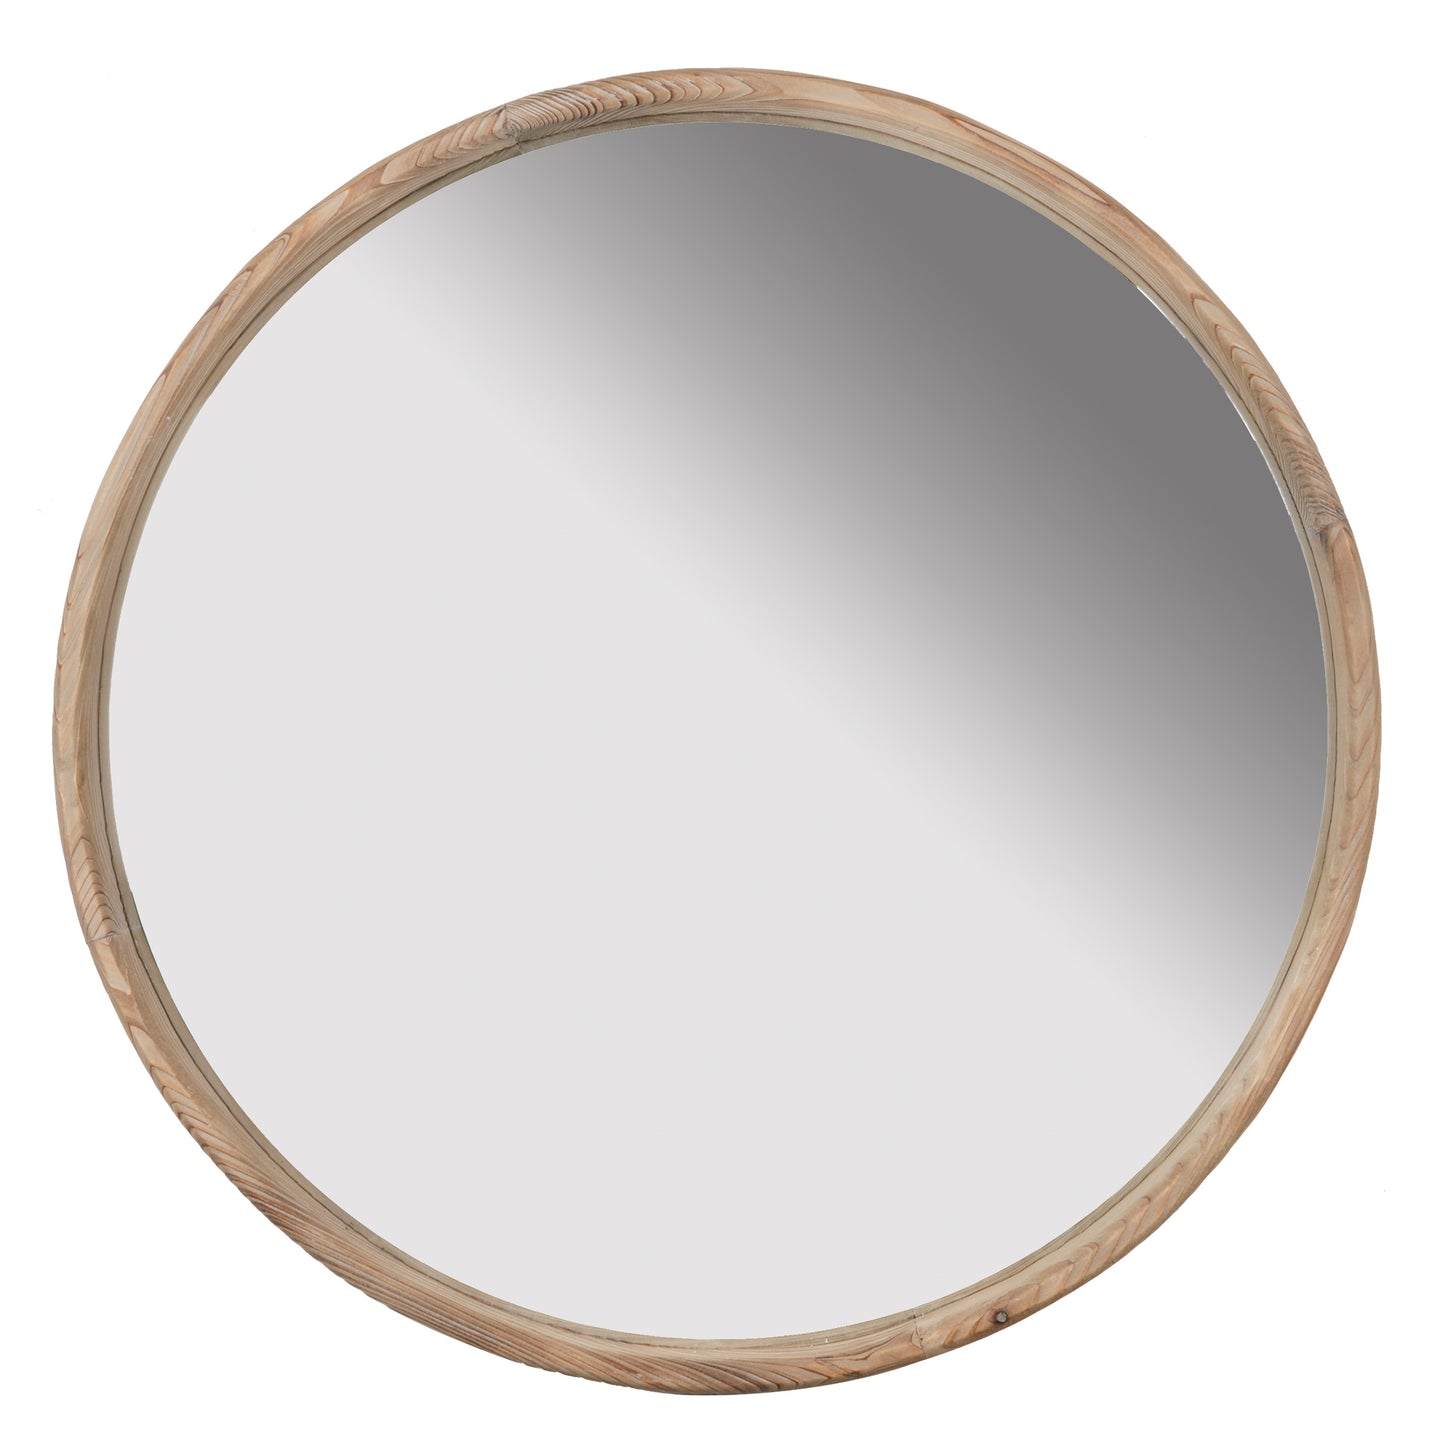 28" Round Brown Wood Mirror